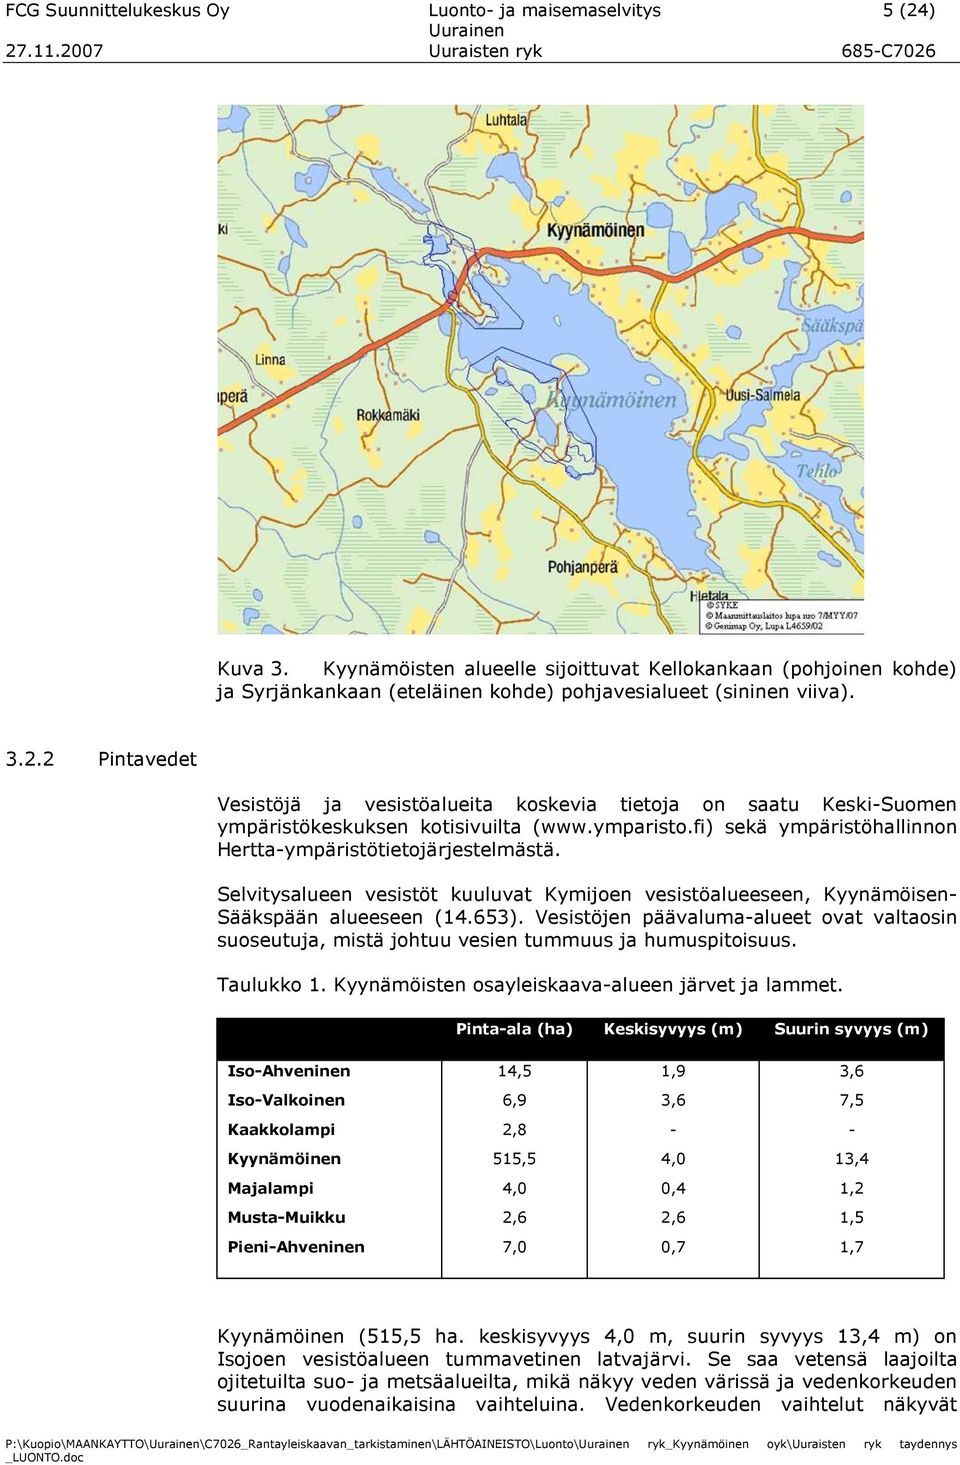 Selvitysalueen vesistöt kuuluvat Kymijoen vesistöalueeseen, Kyynämöisen- Sääkspään alueeseen (14.653).